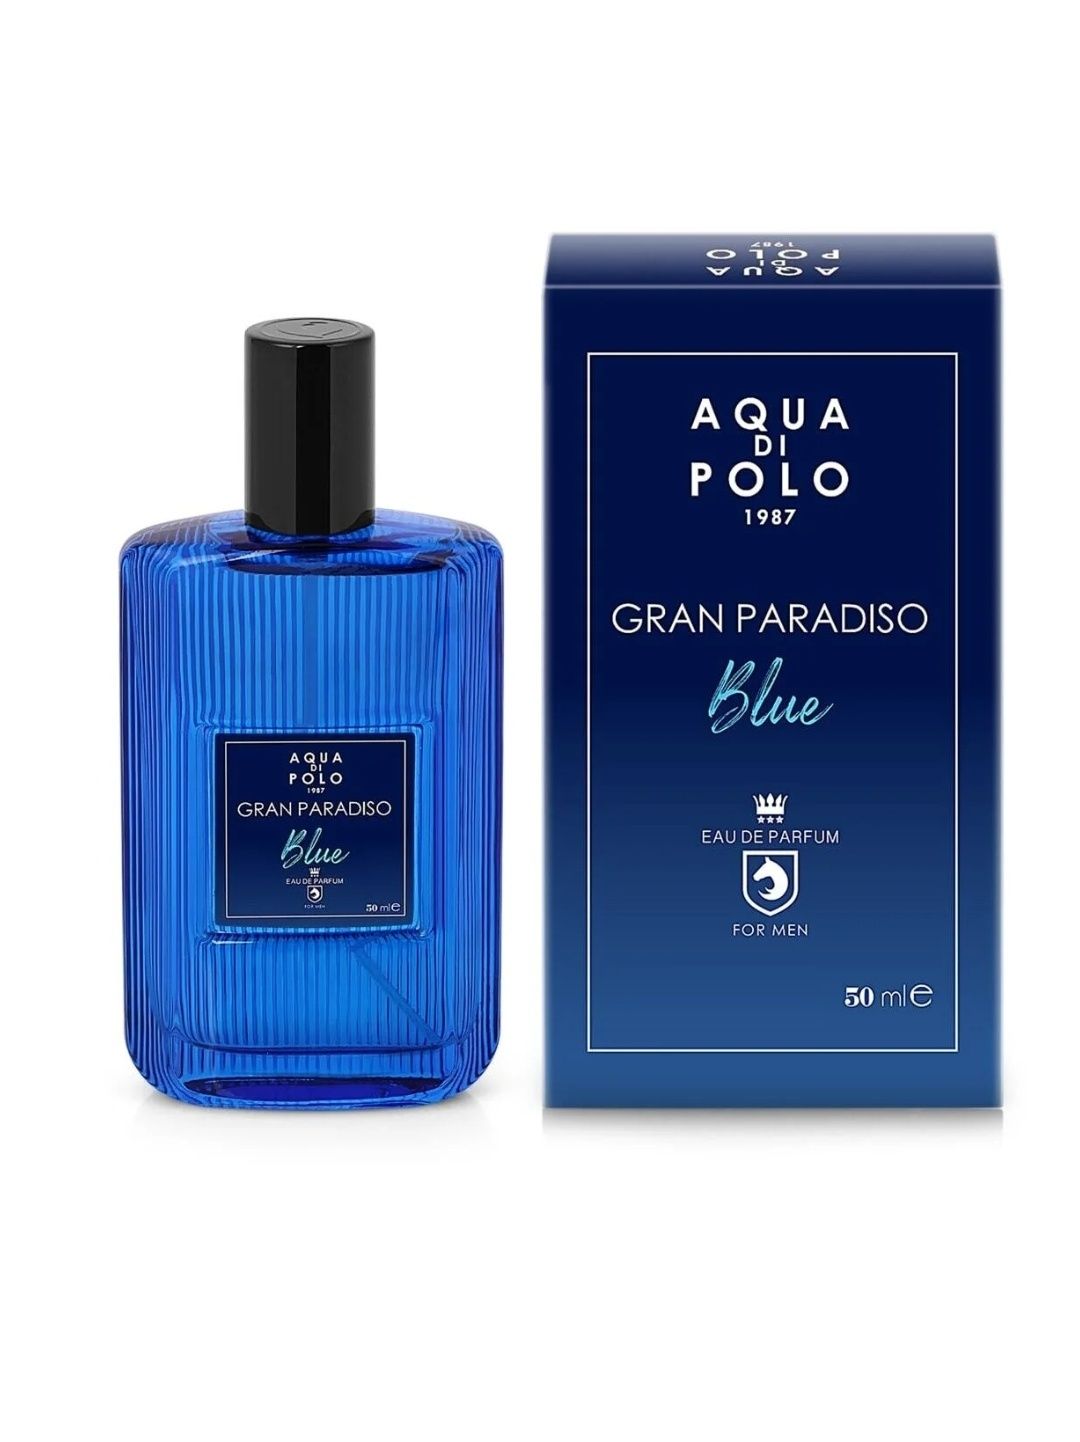 Аква ди поло 1987 г Gran Paradiso Blue 50 ml EDP мъжки парфюм